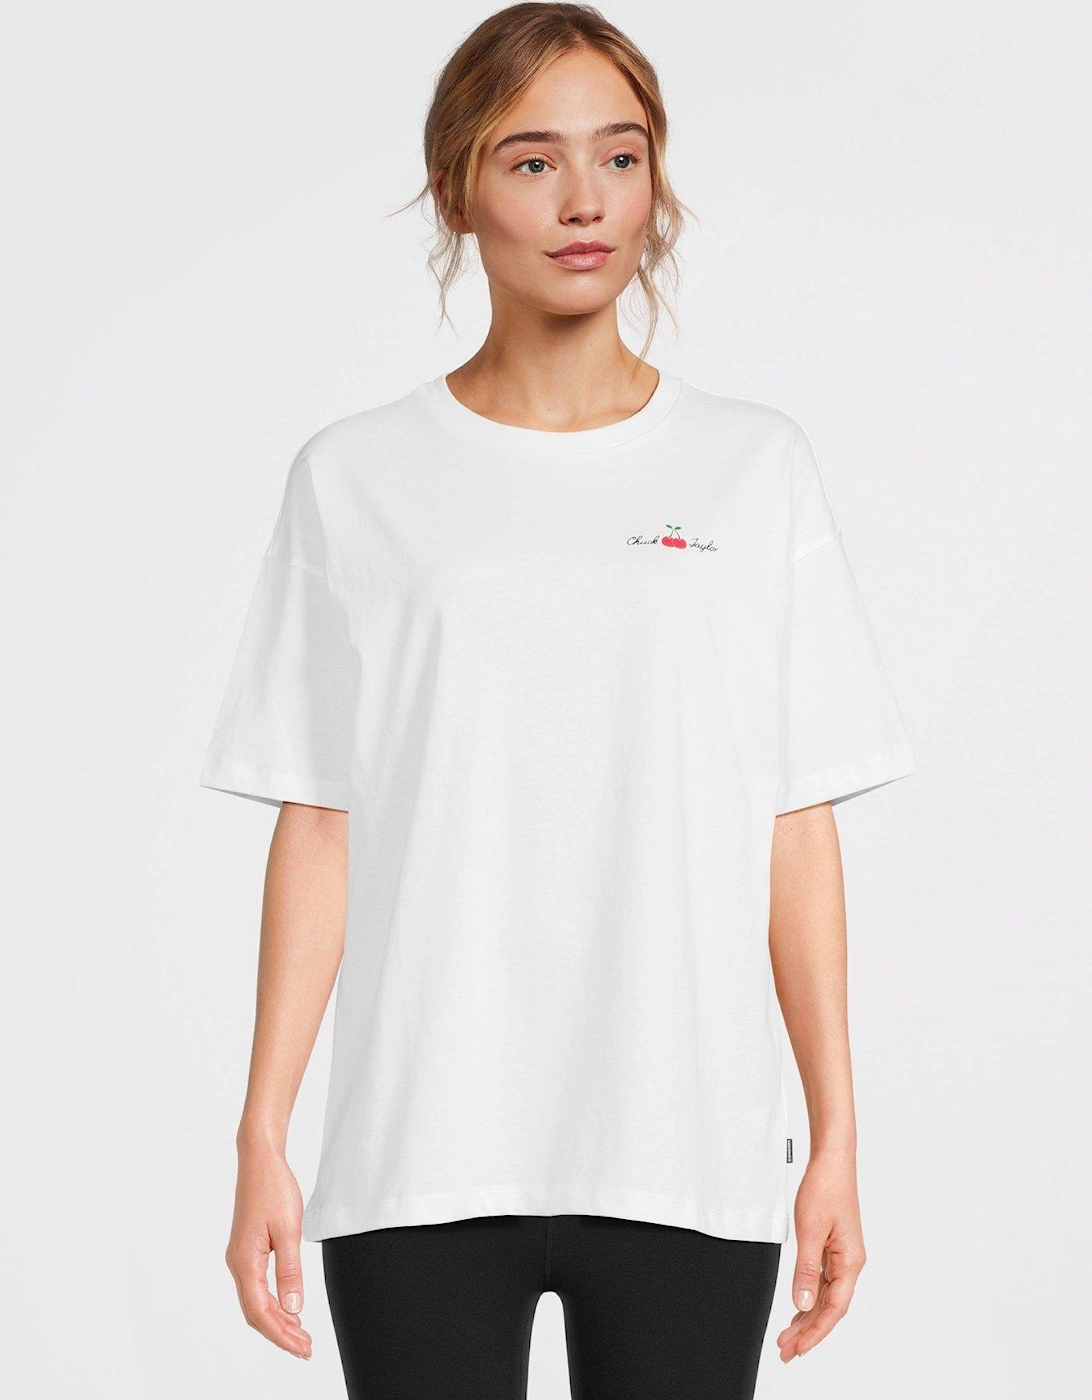 Womens Oversized Cherry T-shirt - White, 2 of 1